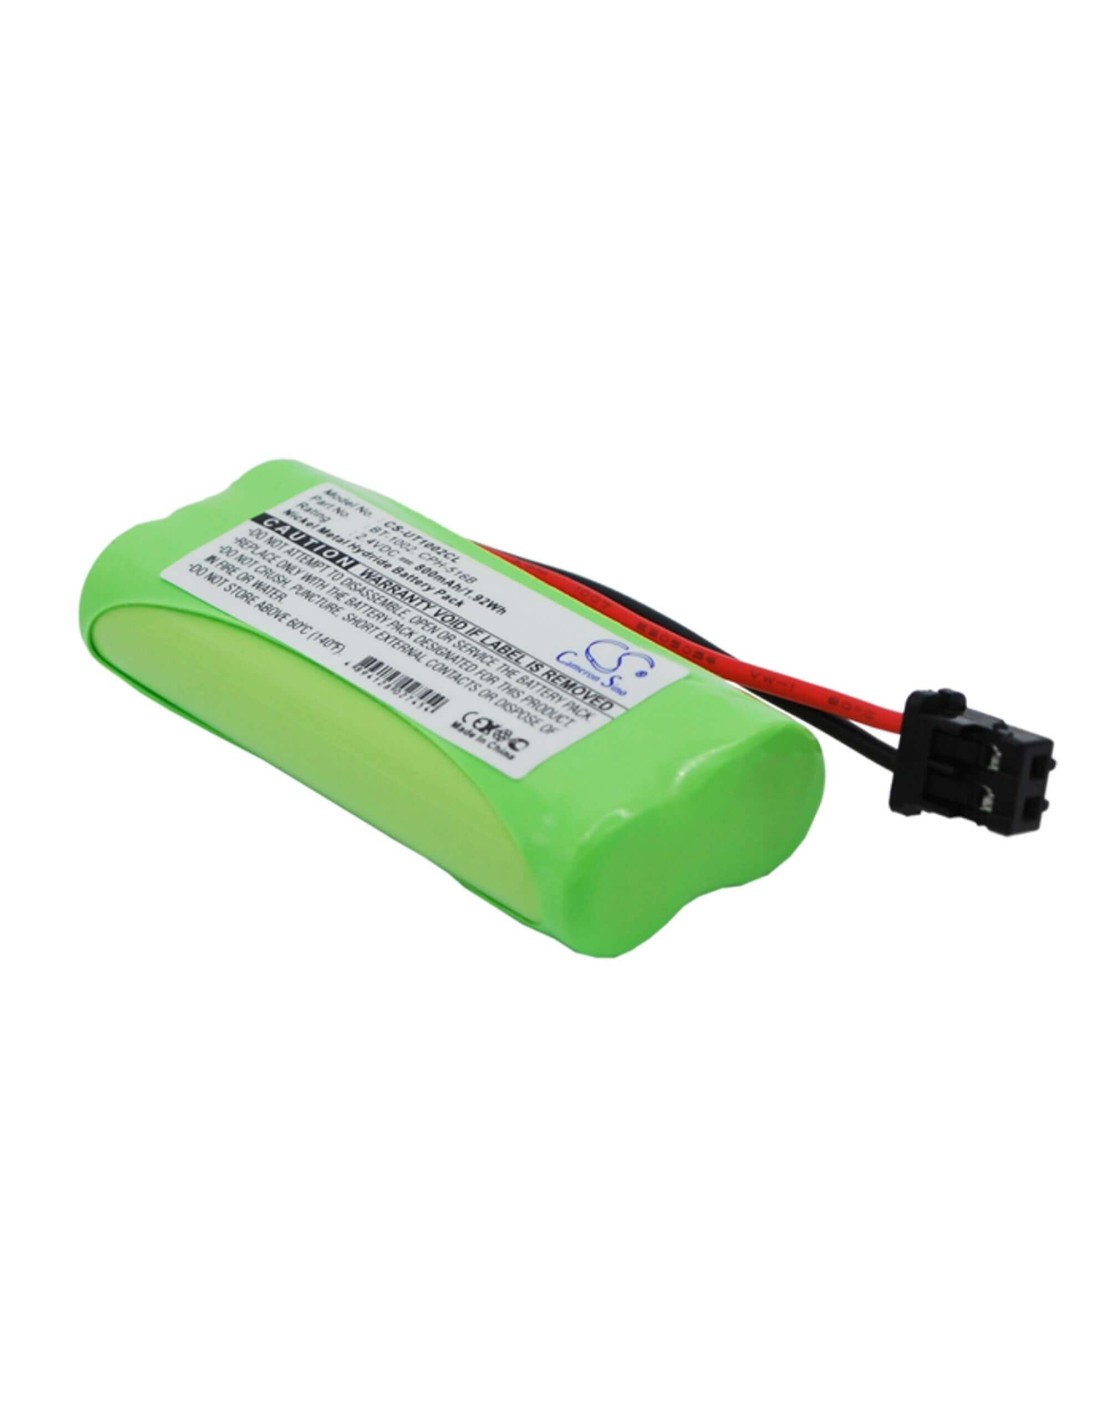 Battery for Uniden, Dcx100, Dect 1060, Dect 2.4V, 800mAh - 1.92Wh